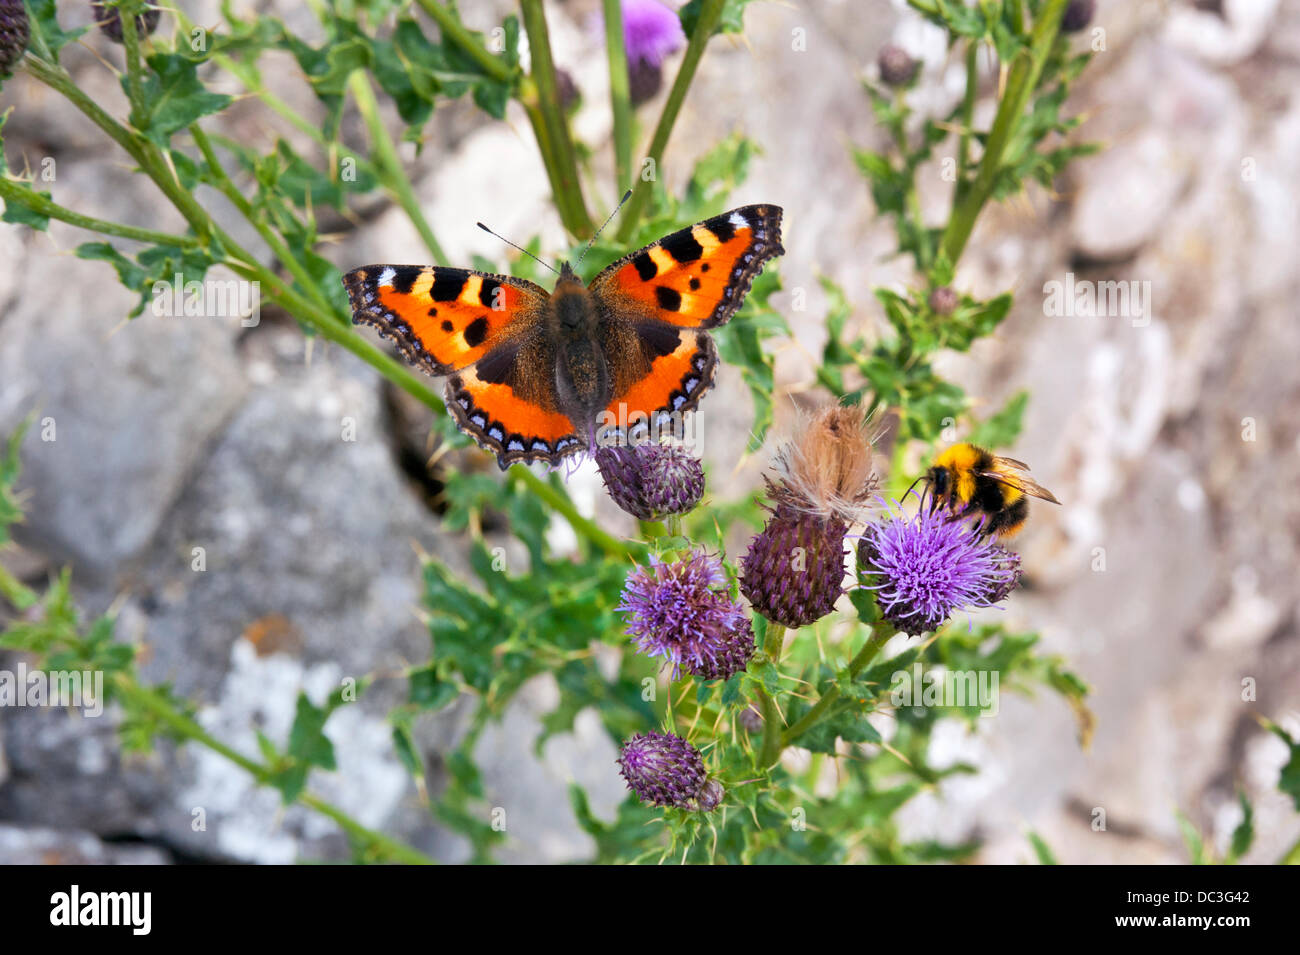 Nei pressi di Wetton, Parco Nazionale di Peak District, UK. 07 Ago, 2013. Piccola tartaruga a farfalla e bee alimentazione su cardi al sole, vicino Wetton, Parco Nazionale di Peak District, UK Credit: John Bentley/Alamy Live News Foto Stock